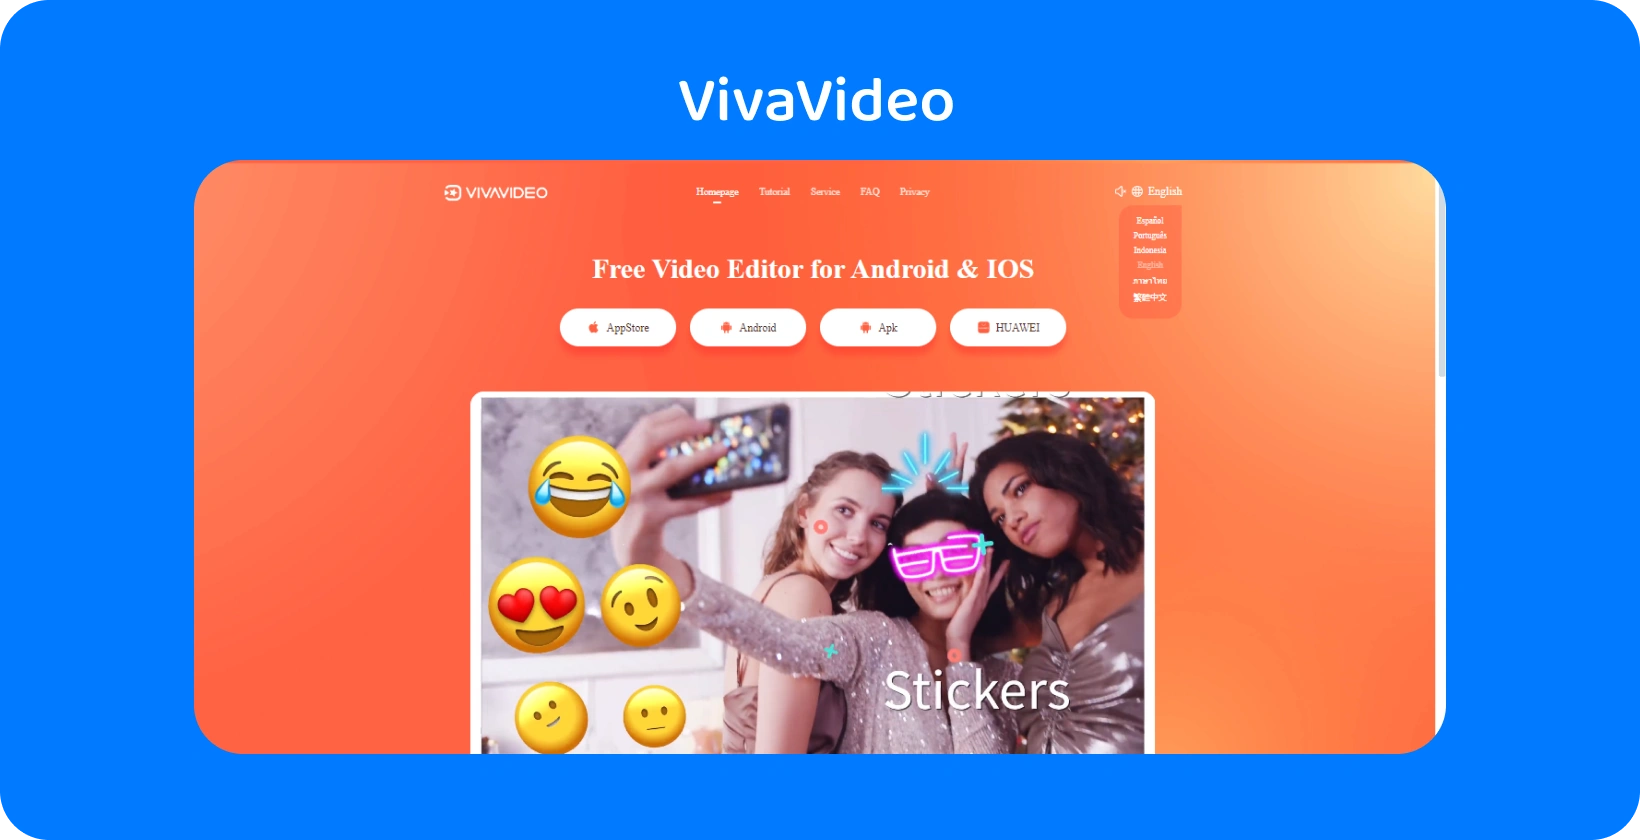 Pagina dell'app VivaVideo con uno sfondo arancione vivace, che mostra le funzionalità degli adesivi per migliorare i video su Android e iOS.
